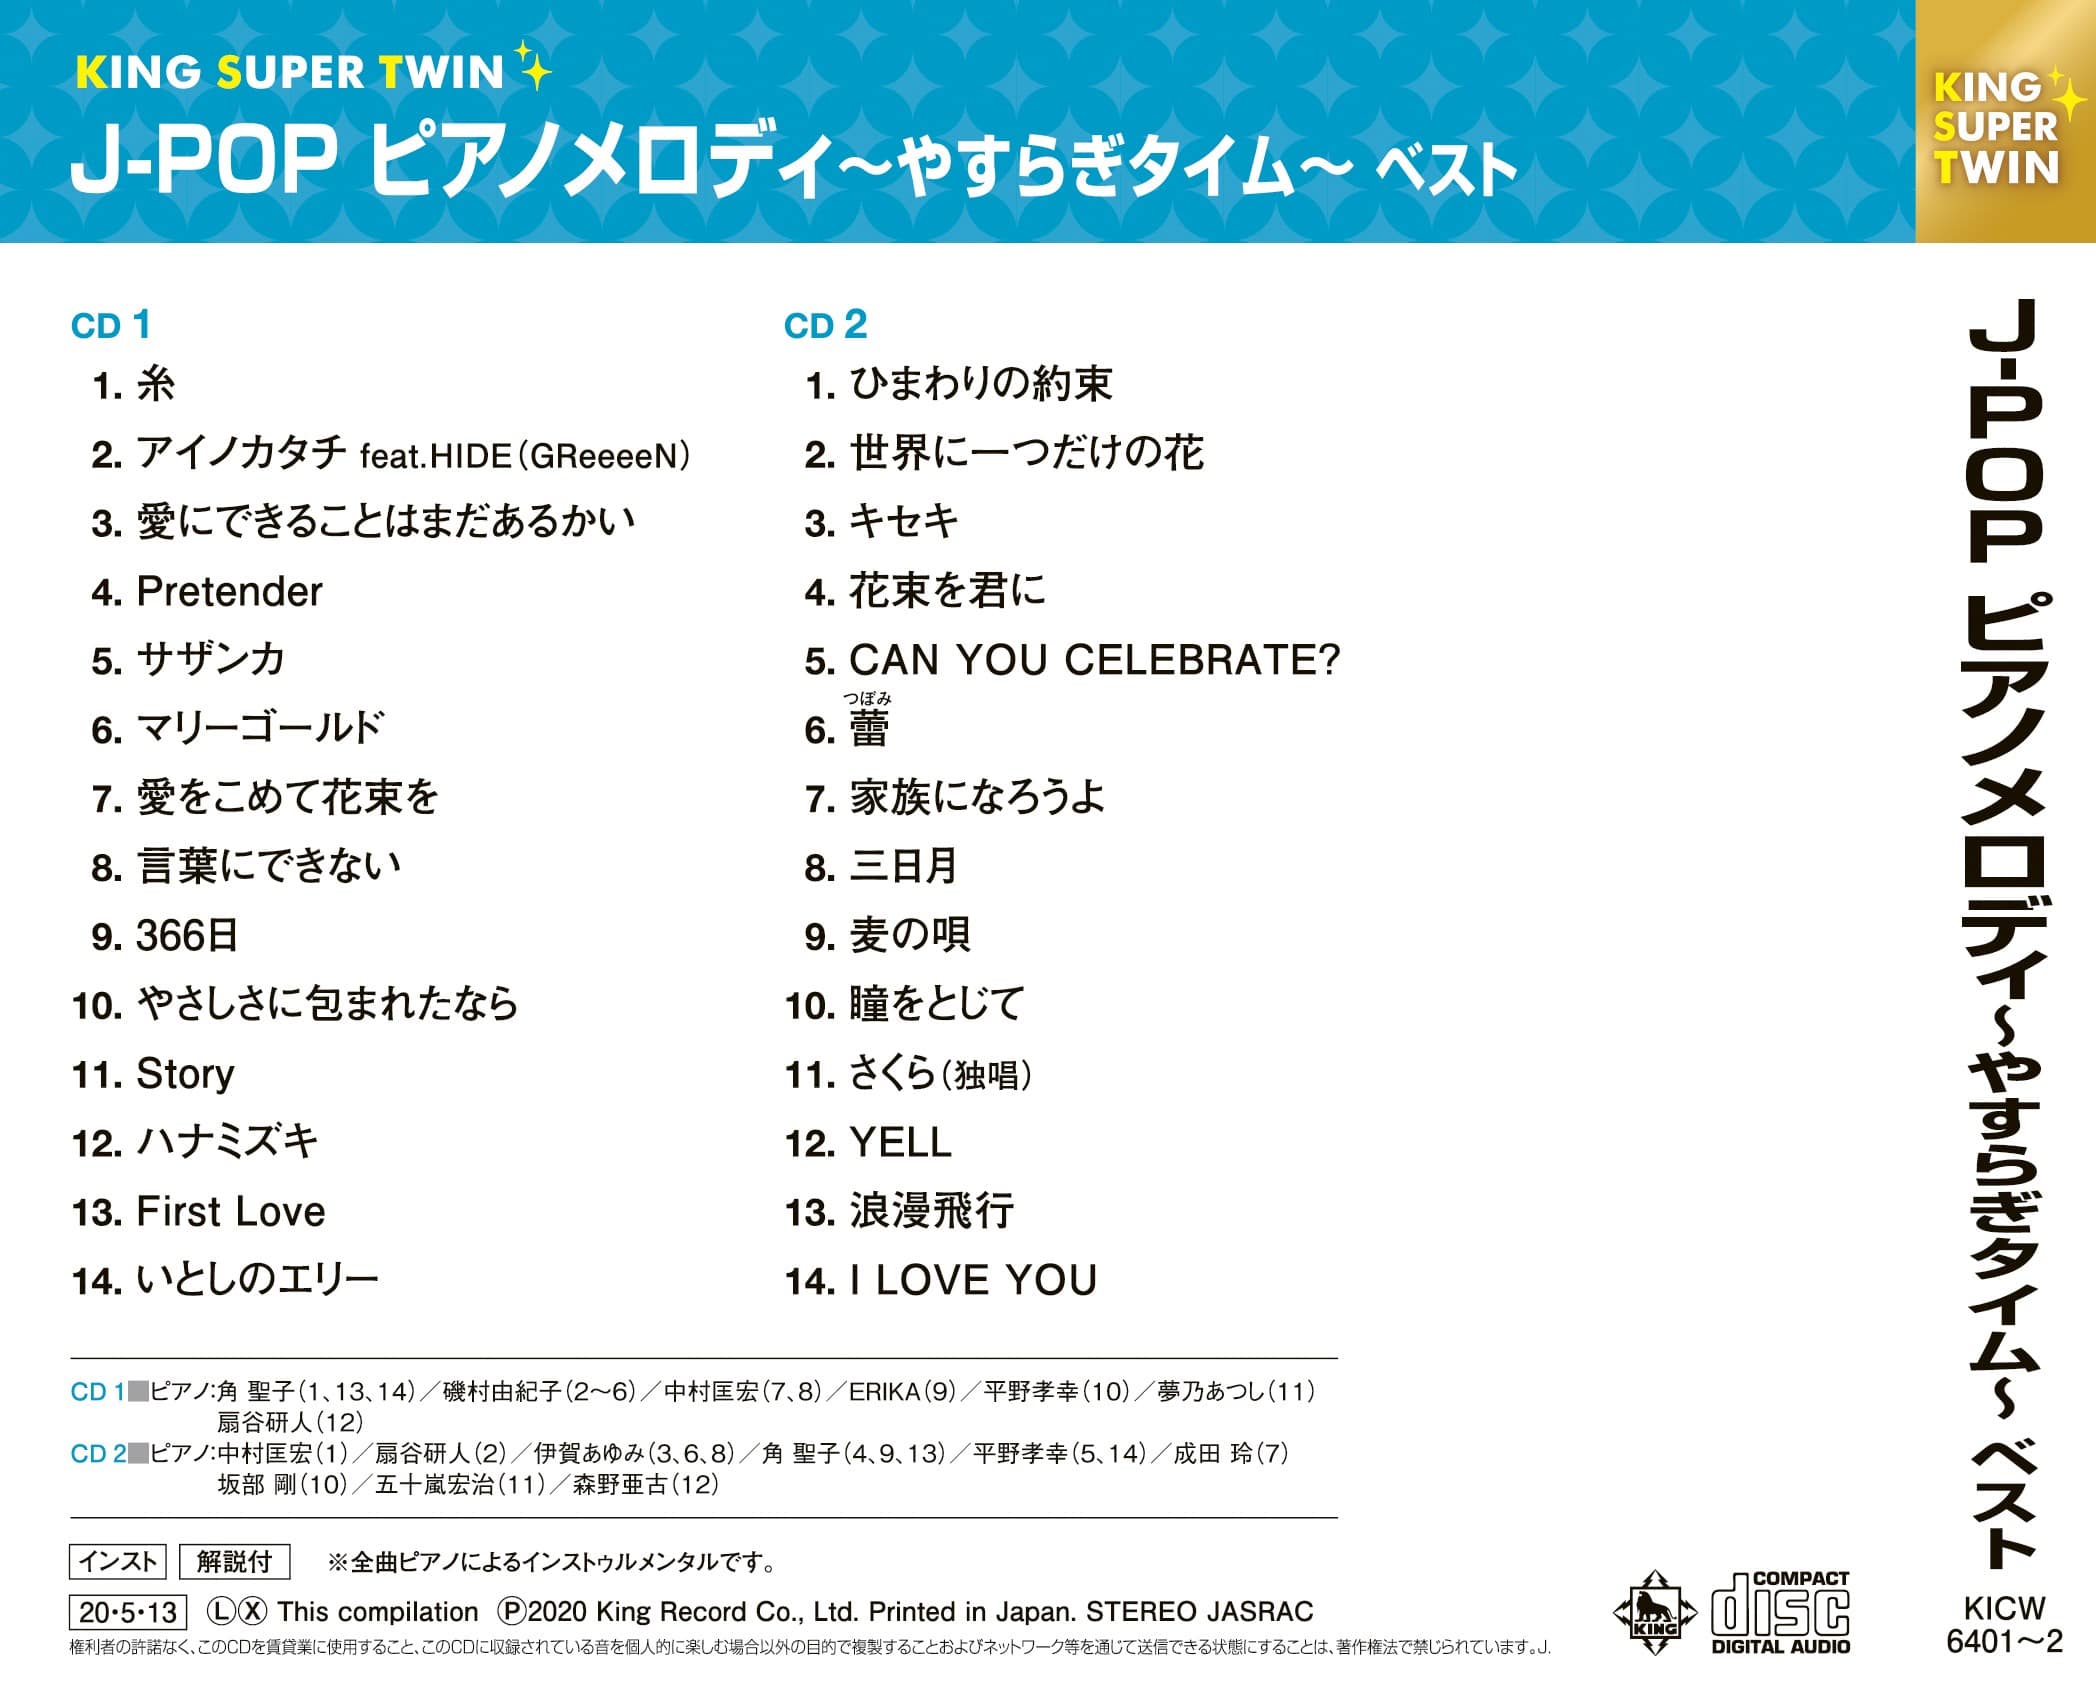 J-POP ピアノメロディ〜やすらぎタイム〜 キング・スーパー・ツイン・シリーズ 2020